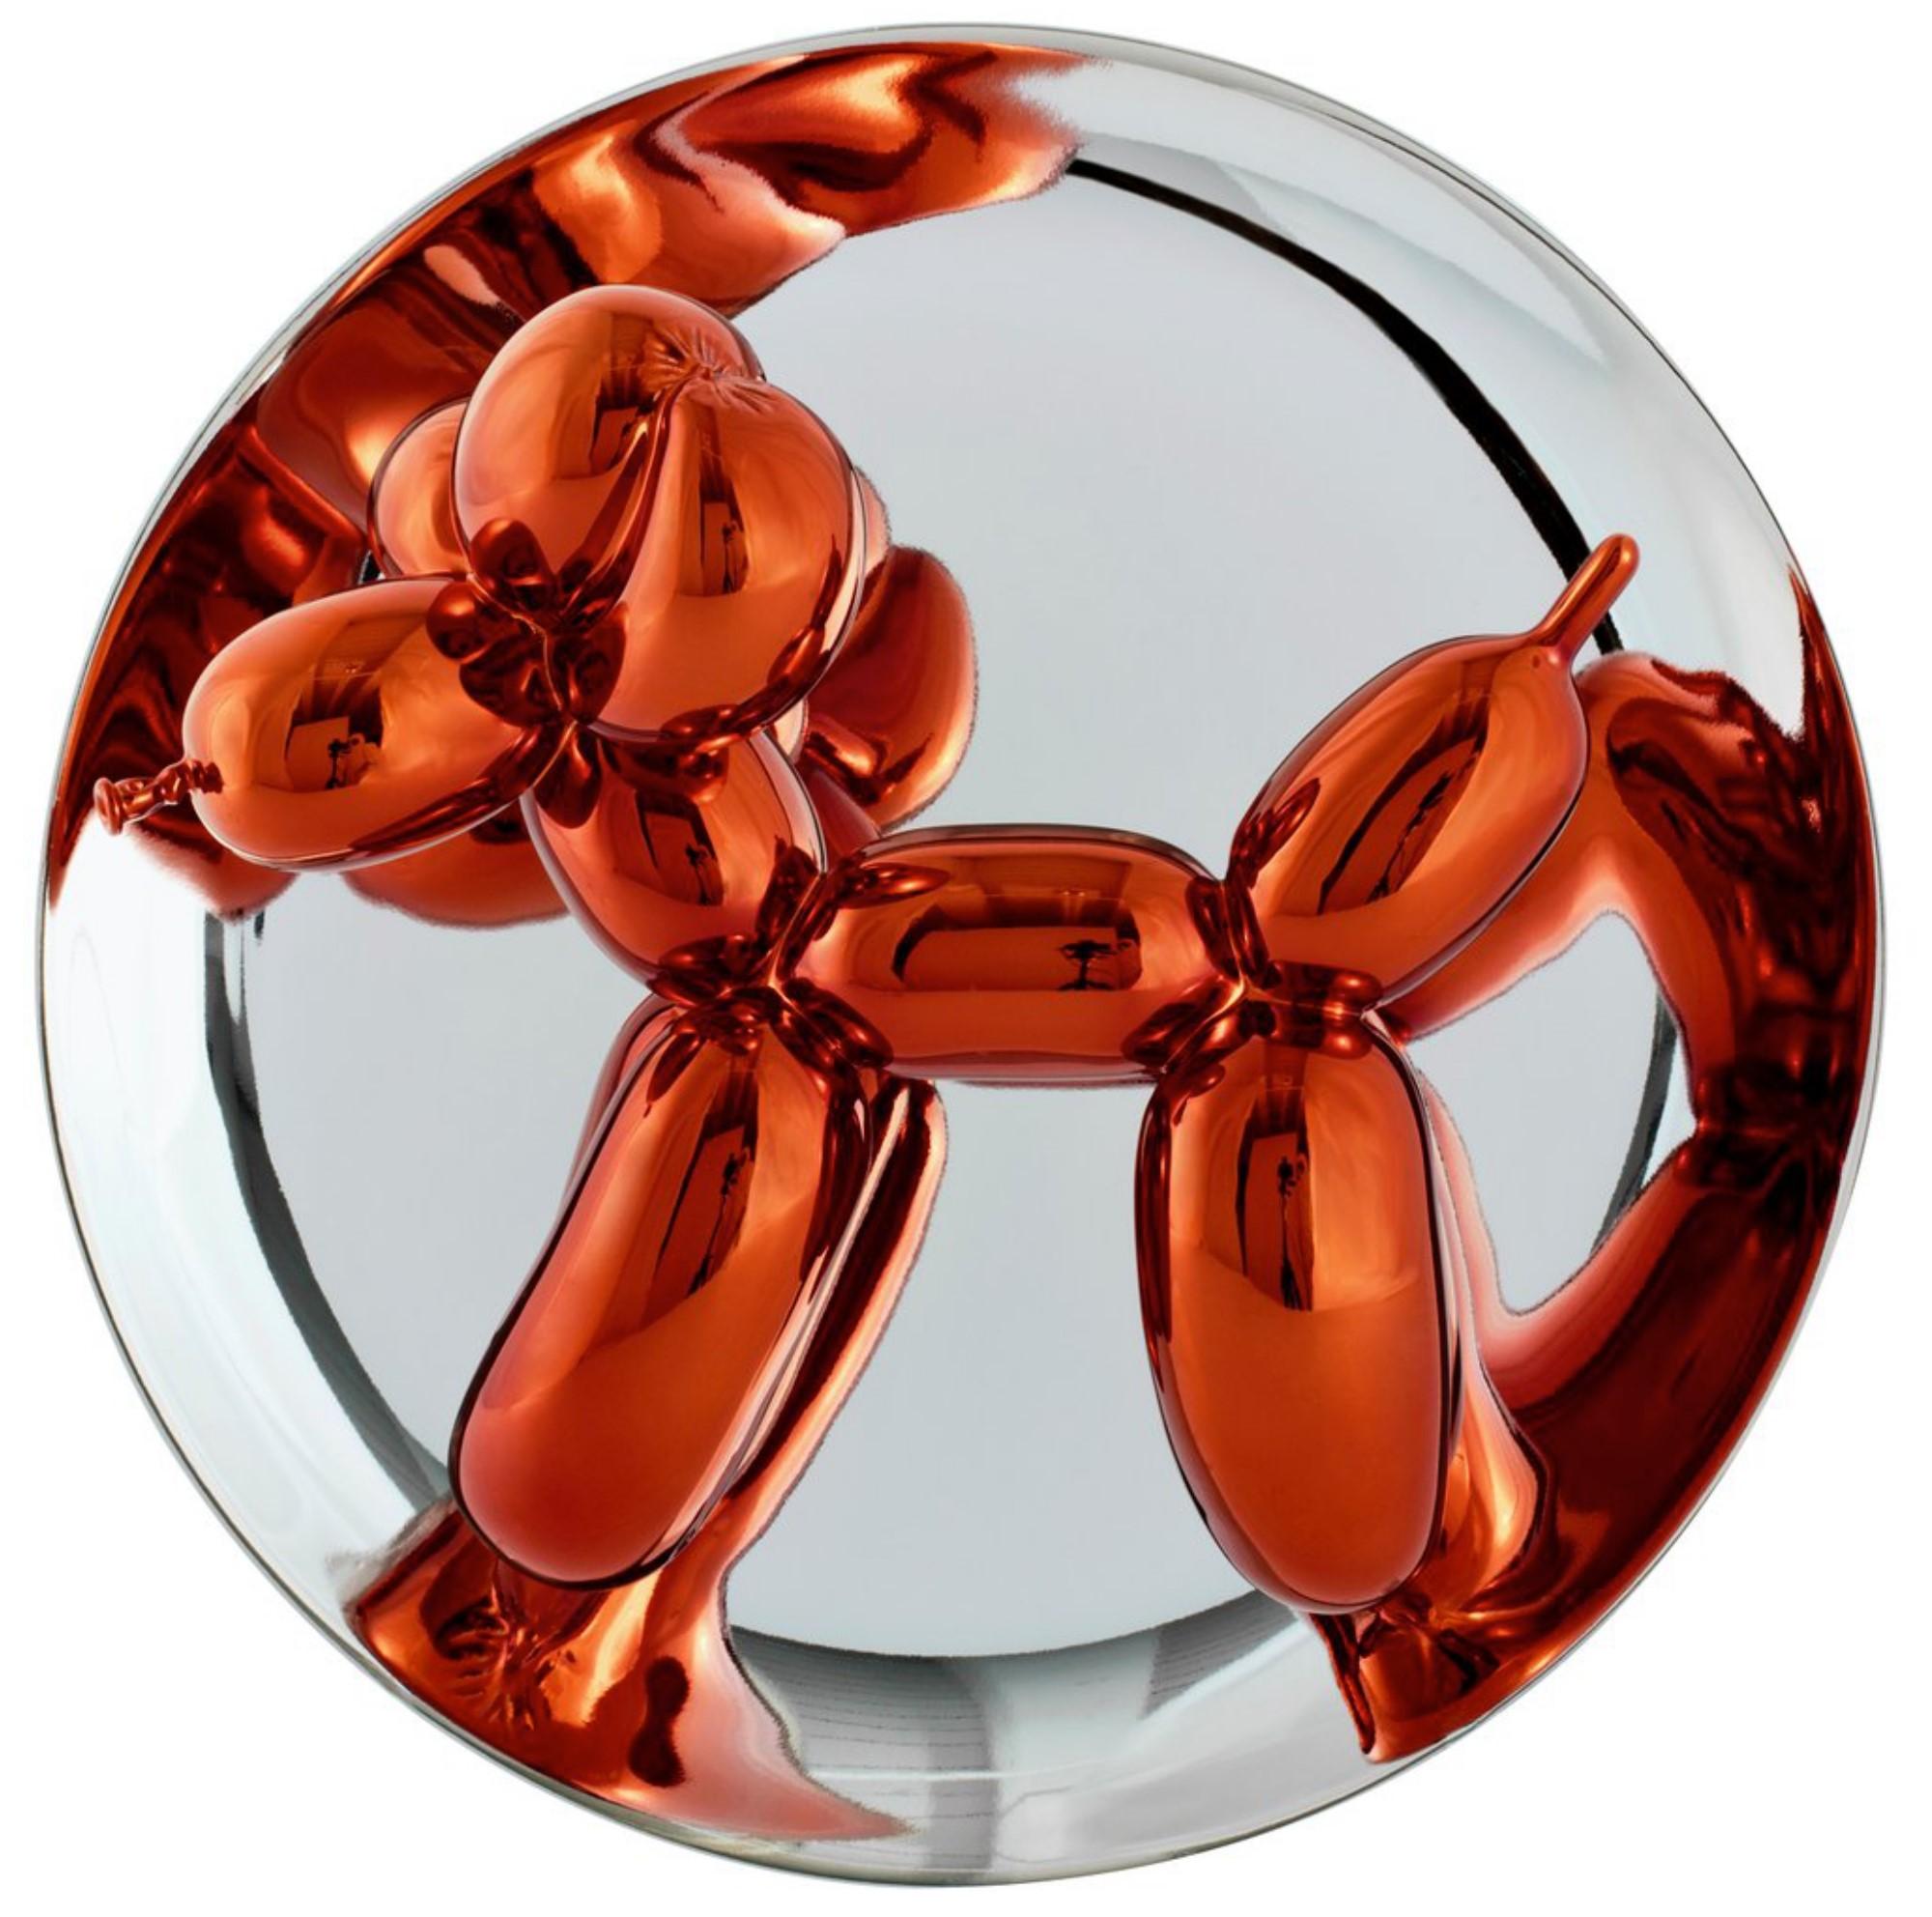 Le chien Ballon orange - Sculpture de Jeff Koons